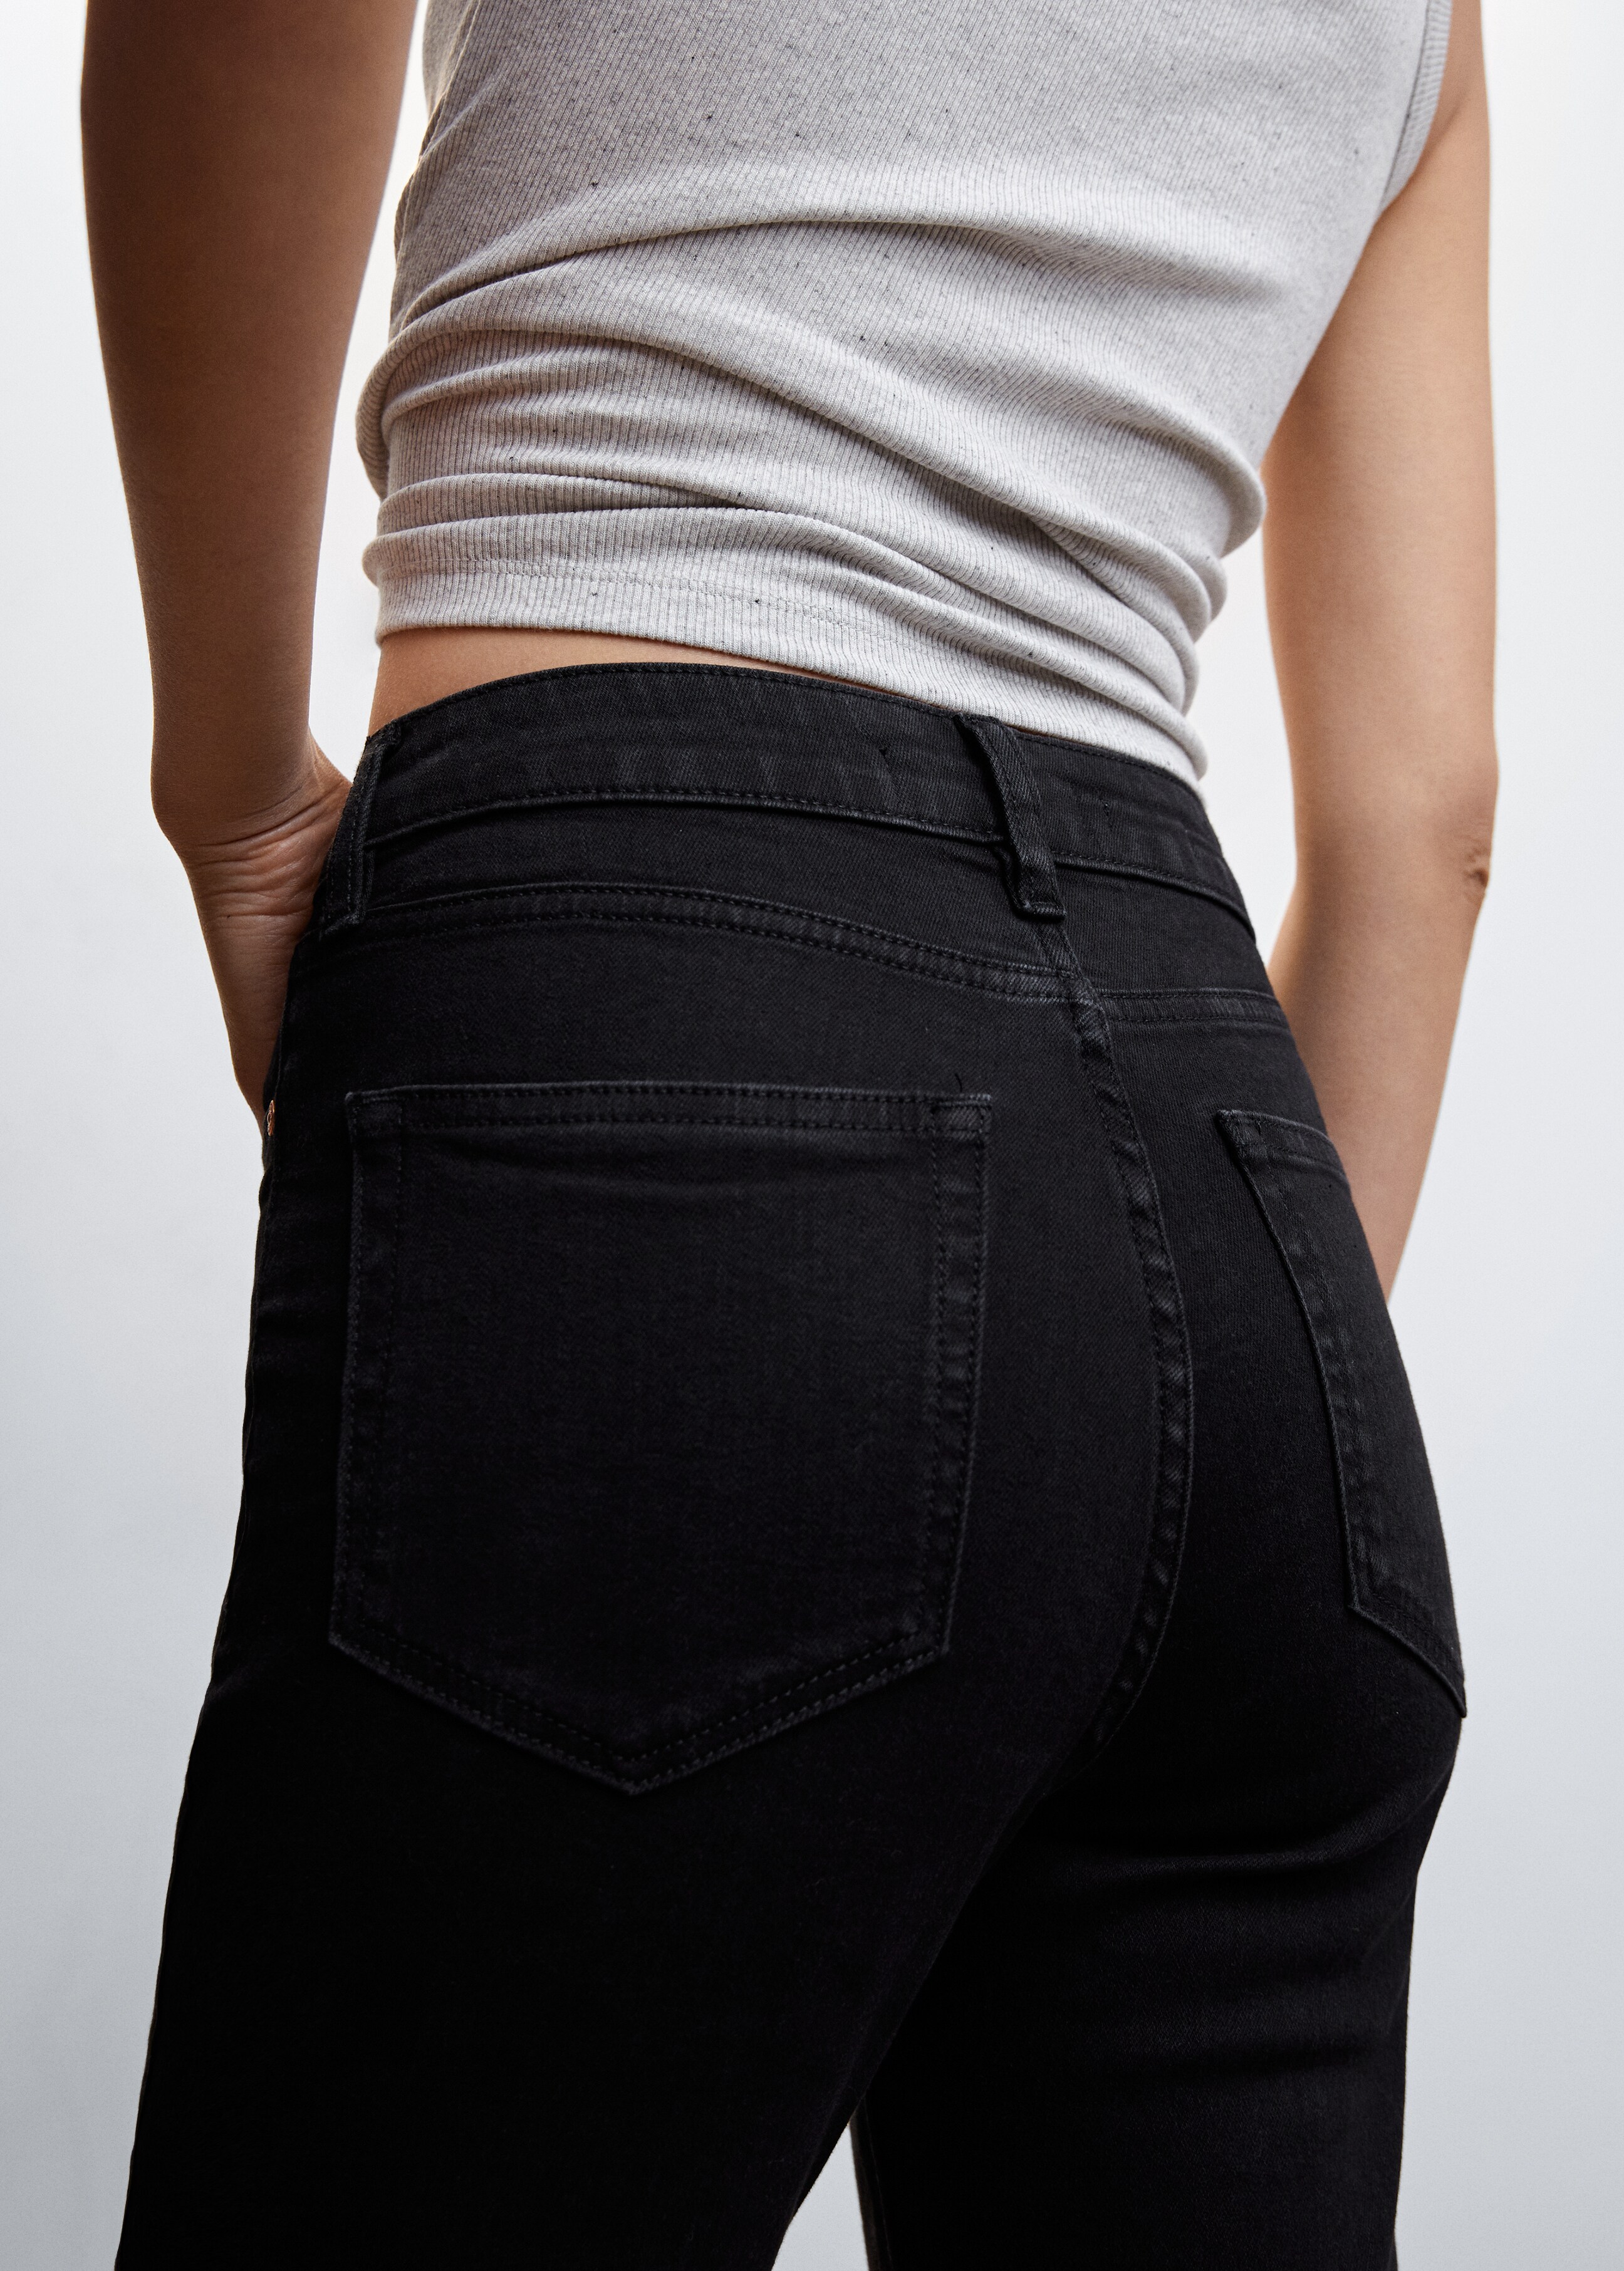 Jeans skinny de cintura alta - Pormenor do artigo 6